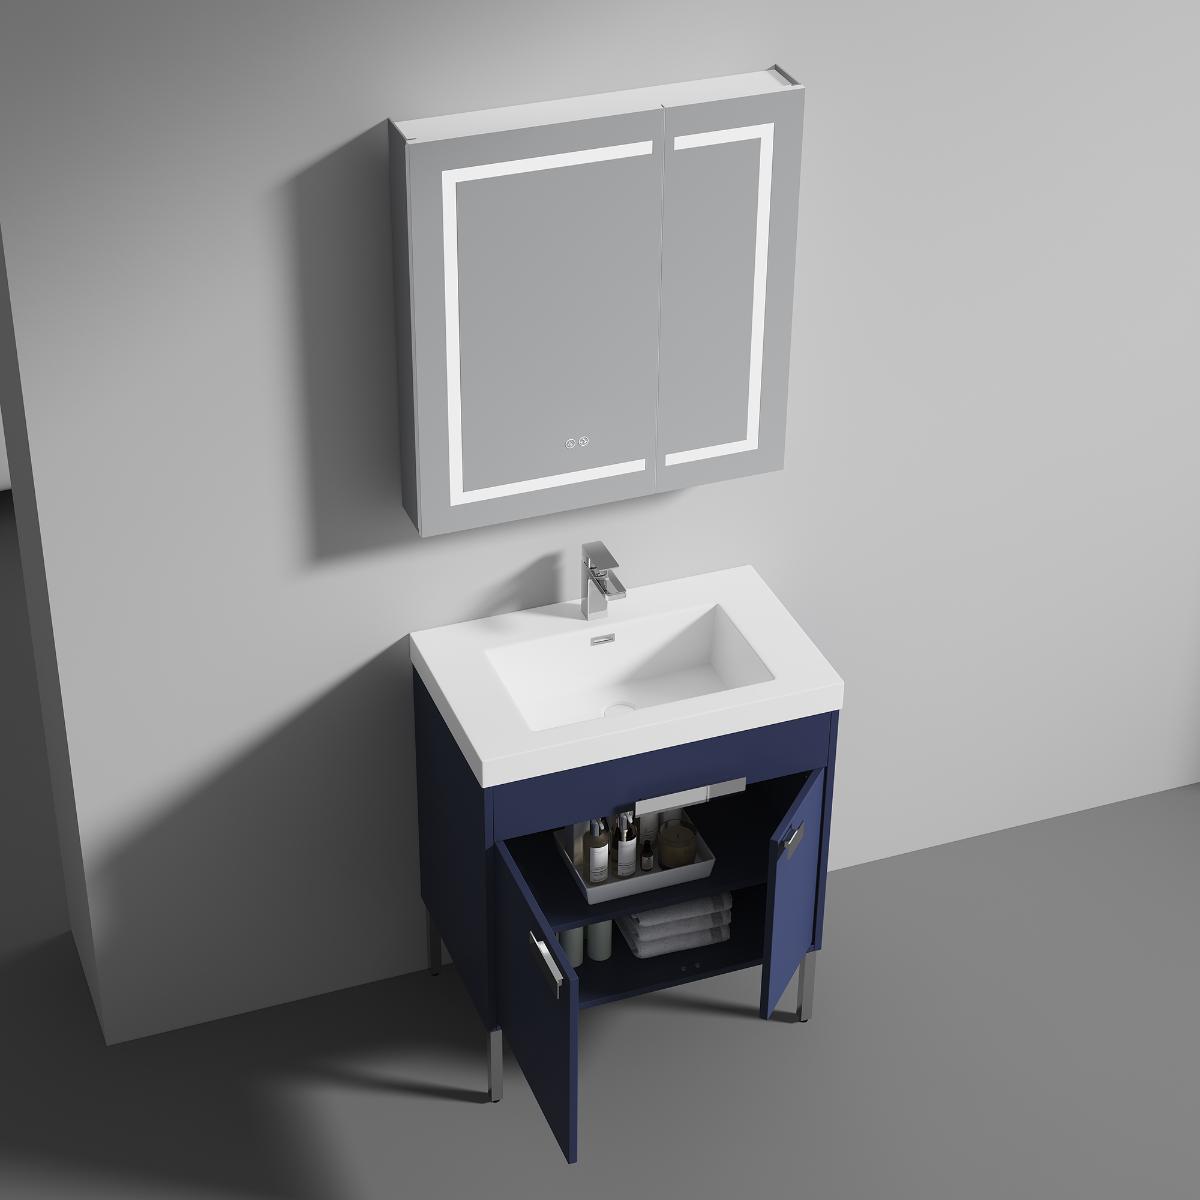 Bari 30" Bathroom Vanity  #size_30"  #color_navy blue